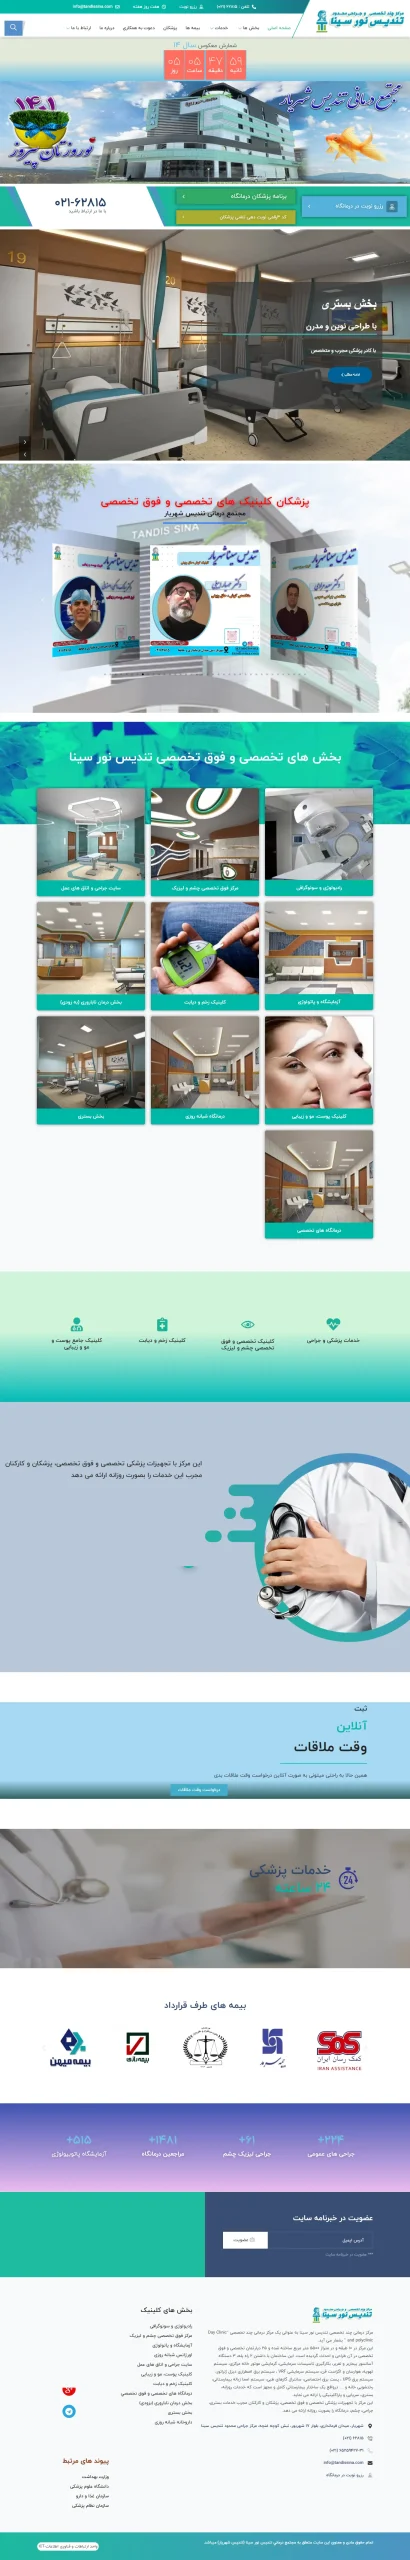 نمونه طراحی سایت پزشکی - درمانگاه